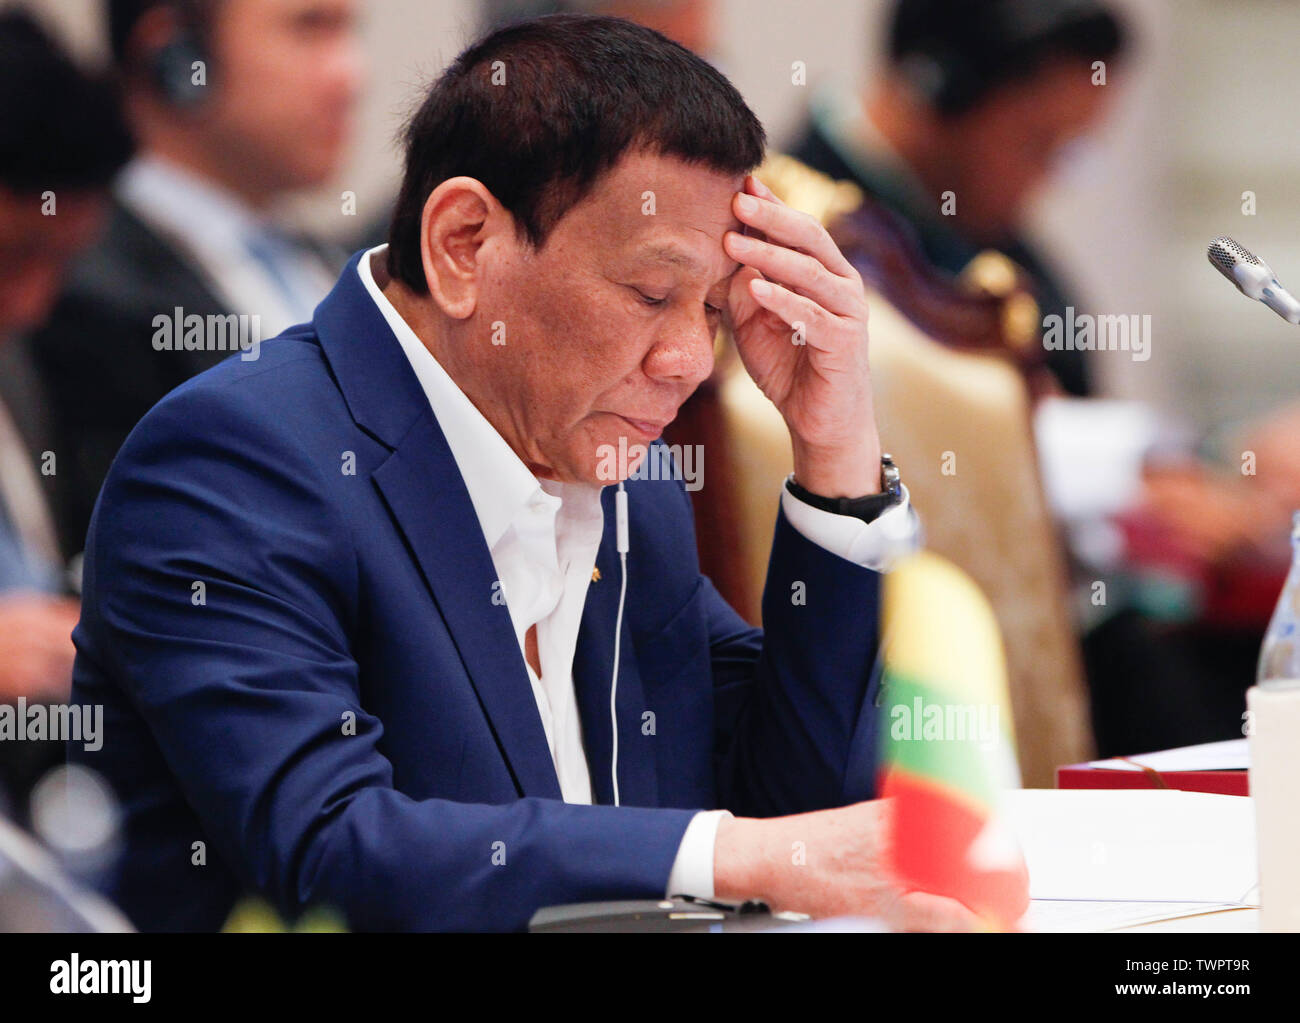 Le président de la République des Philippines, Rodrigo Duterte Roa assiste à une 34e Sommet de l'ASEAN (Plénière) à Bangkok. Le sommet de l'ASEAN est une réunion semestrielle tenue par les membres de l'Association des nations de l'Asie du Sud-Est (ANASE) dans les domaines économique, politique, de la sécurité, et socio-culturel des pays d'Asie. Banque D'Images